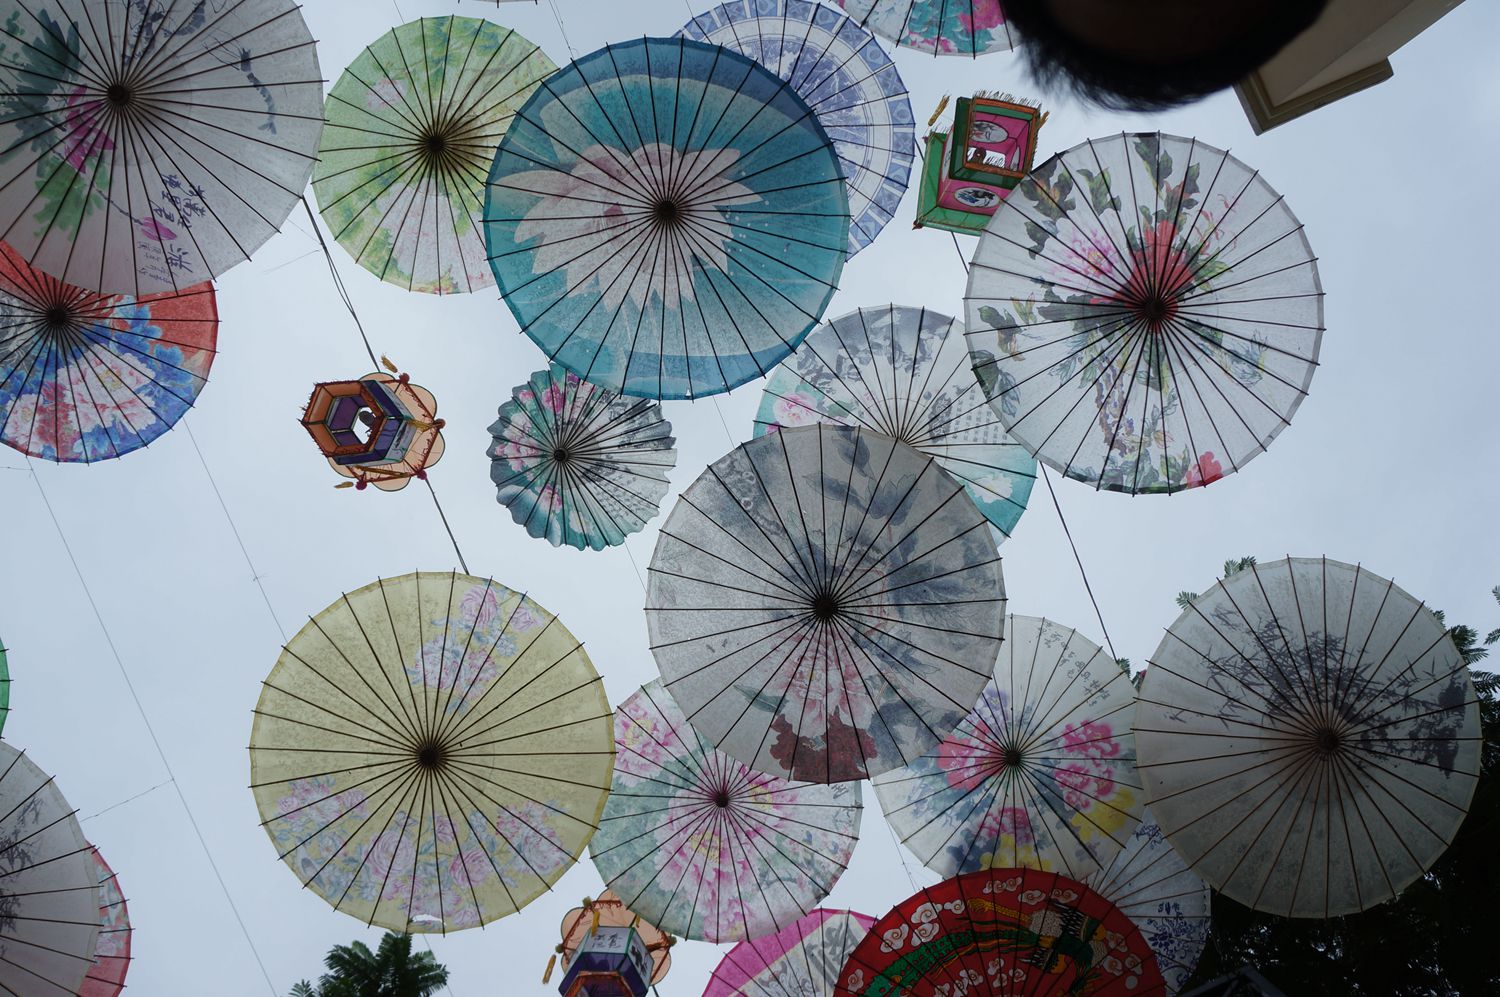 瀘州油紙傘